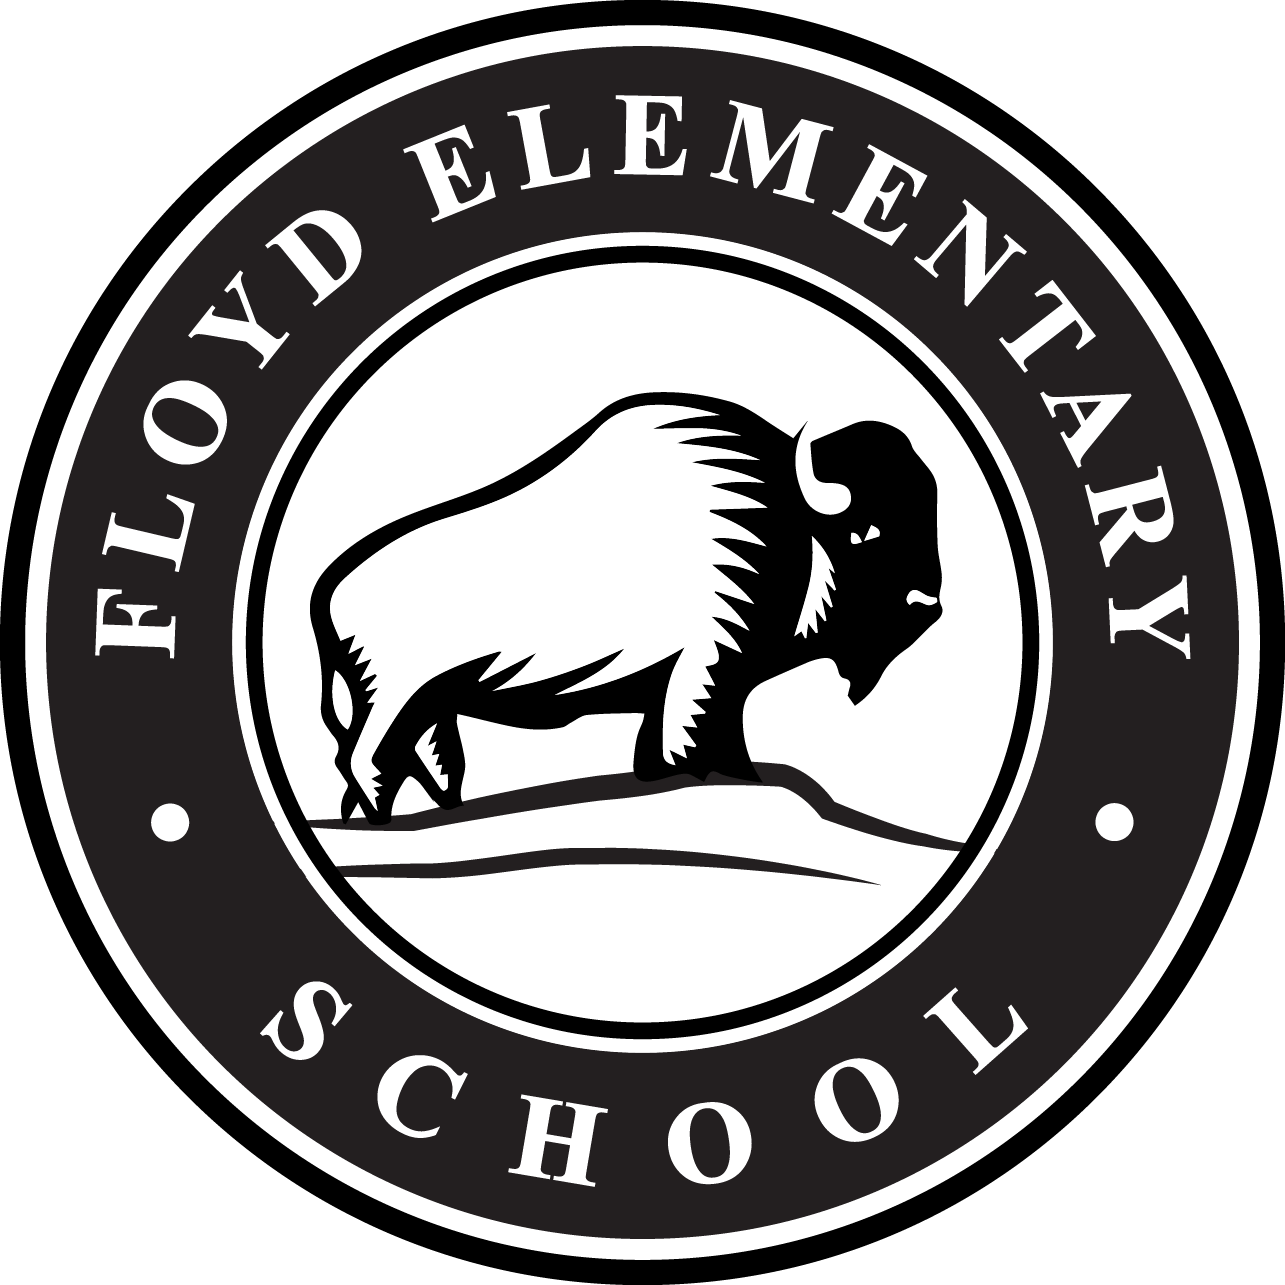 Floyd Elementary School